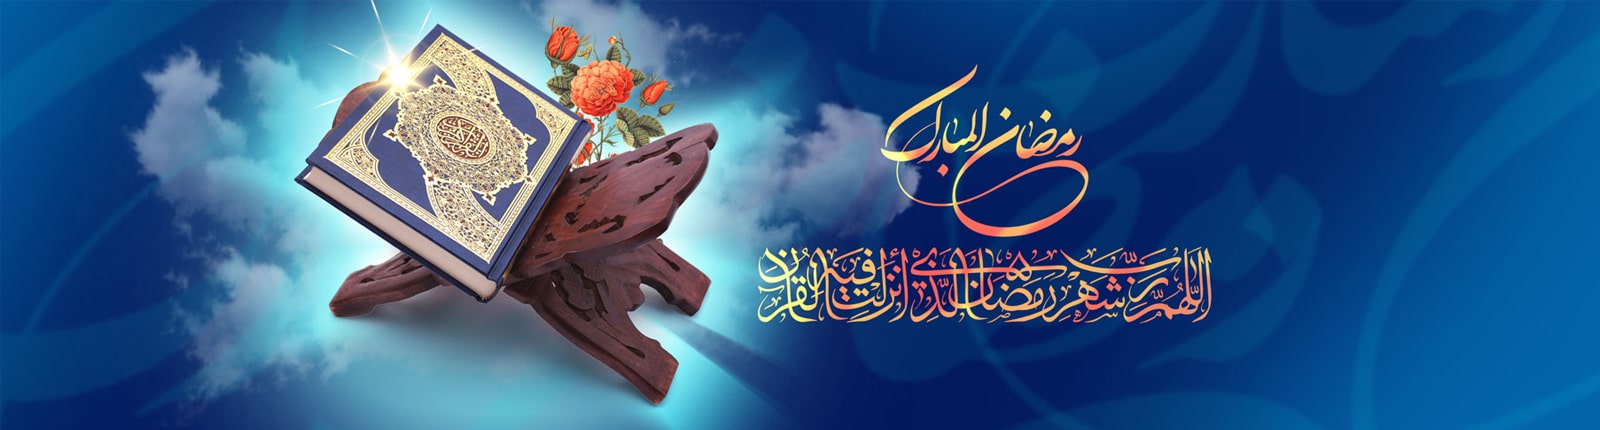 در ماه رمضان خداوند بزرگ گناهان افراد را می بخشد و درهای رحمت را به روی بندگان مخلص خود باز می کند